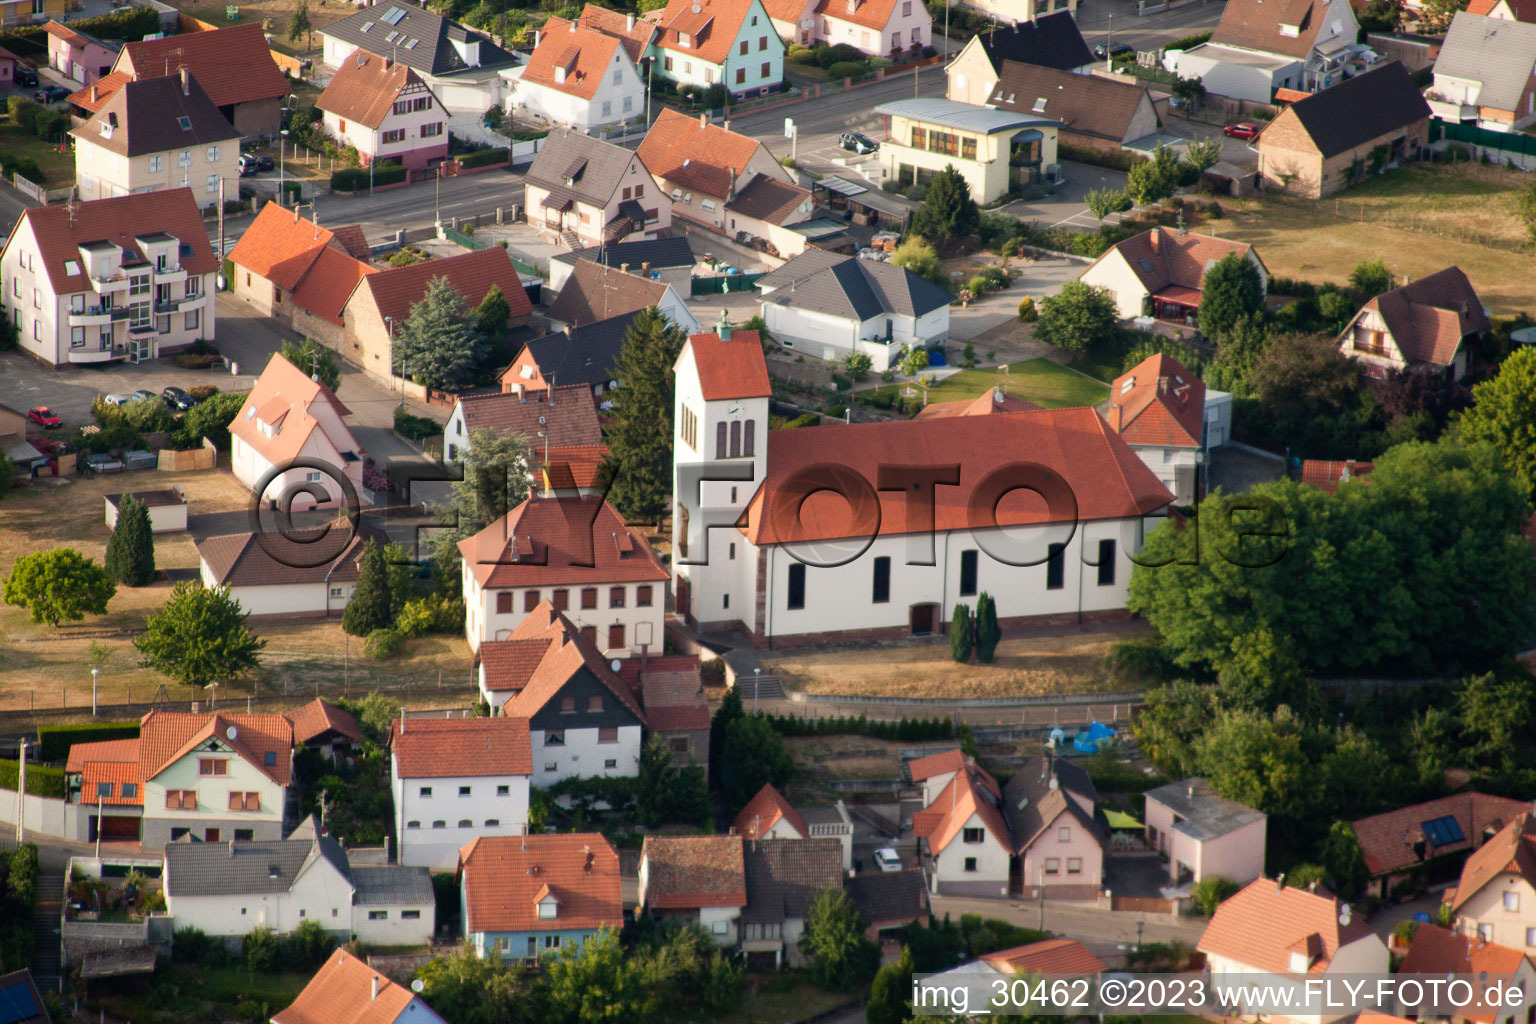 Schirrhein in the state Bas-Rhin, France viewn from the air